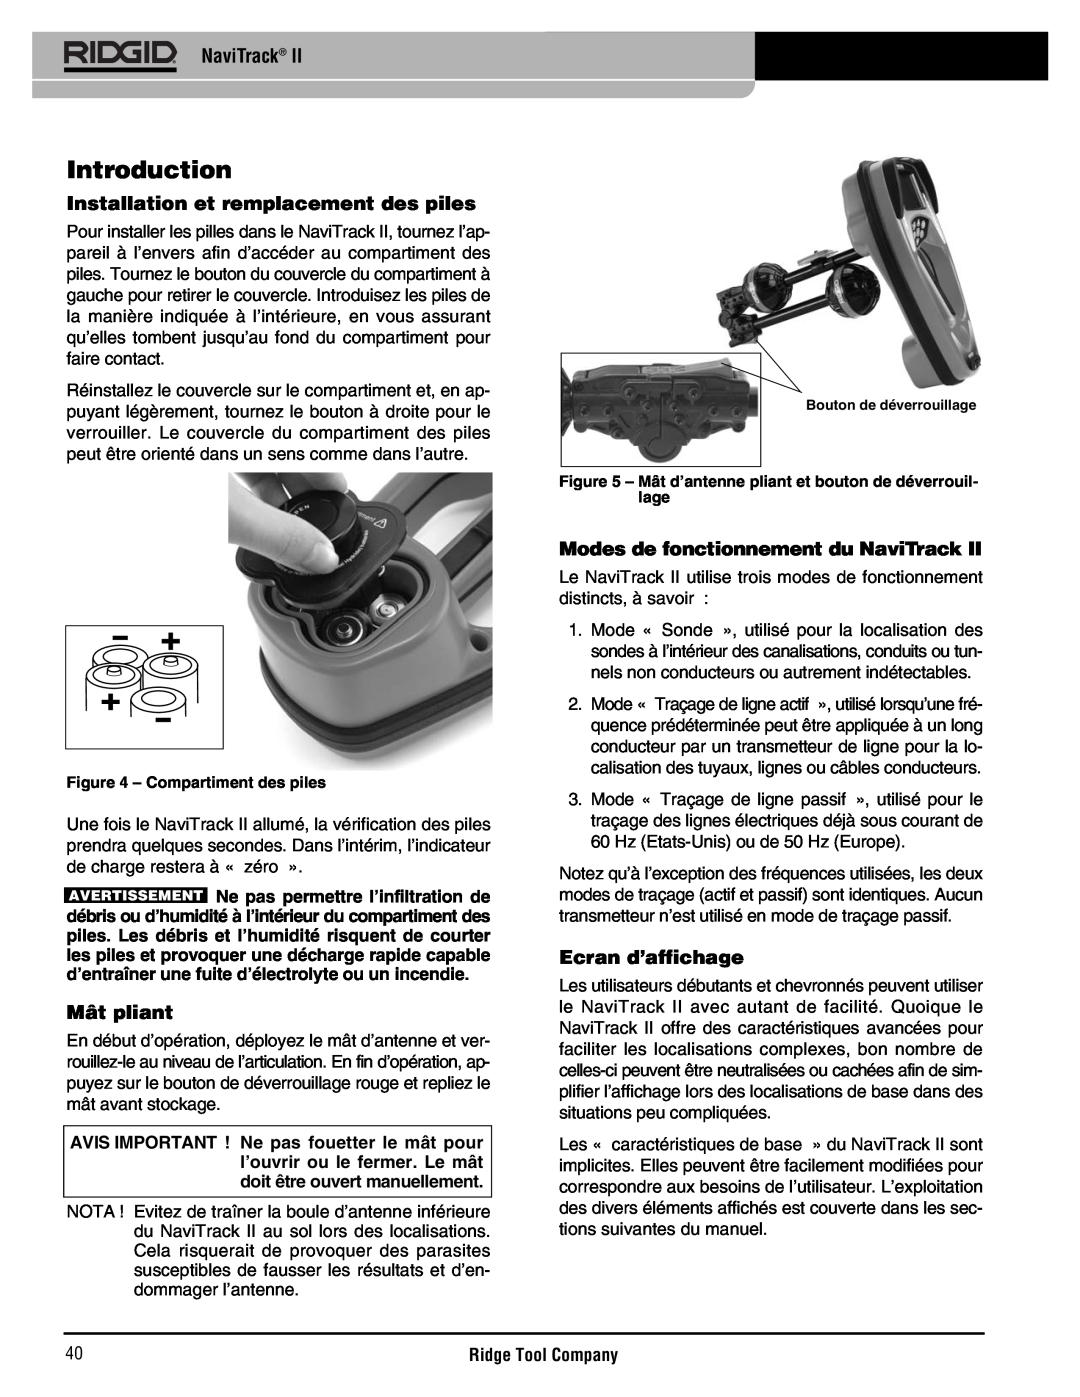 RIDGID Metal Detector manual Introduction, Installation et remplacement des piles, Mât pliant, Ecran d’affichage, NaviTrack 